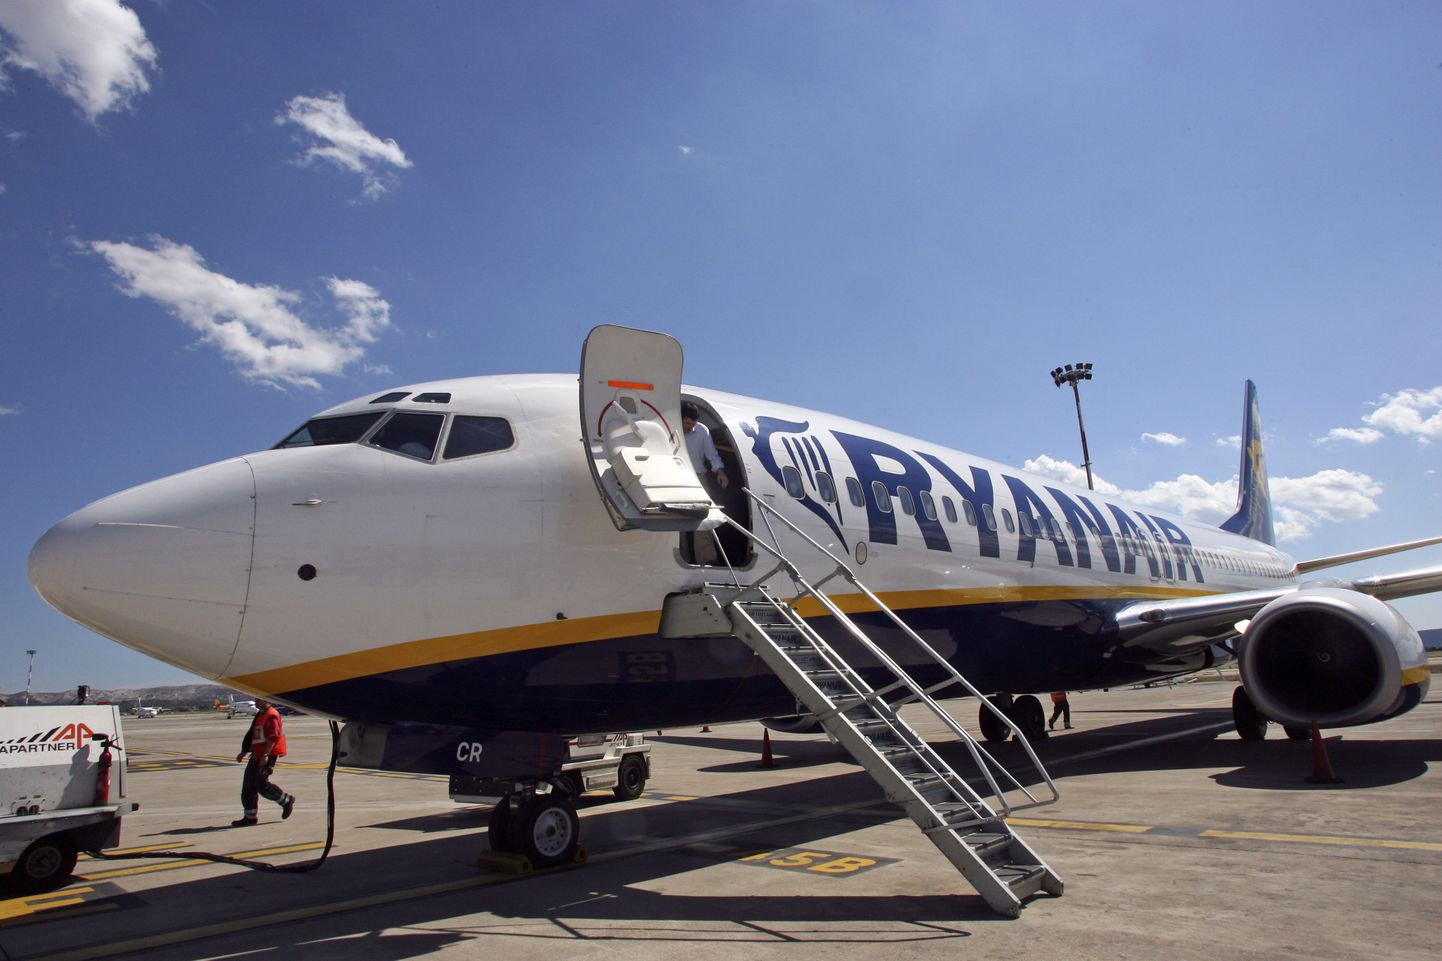 Ryanairi lennukis tekkis eestlase ja inglase vahel kaklus